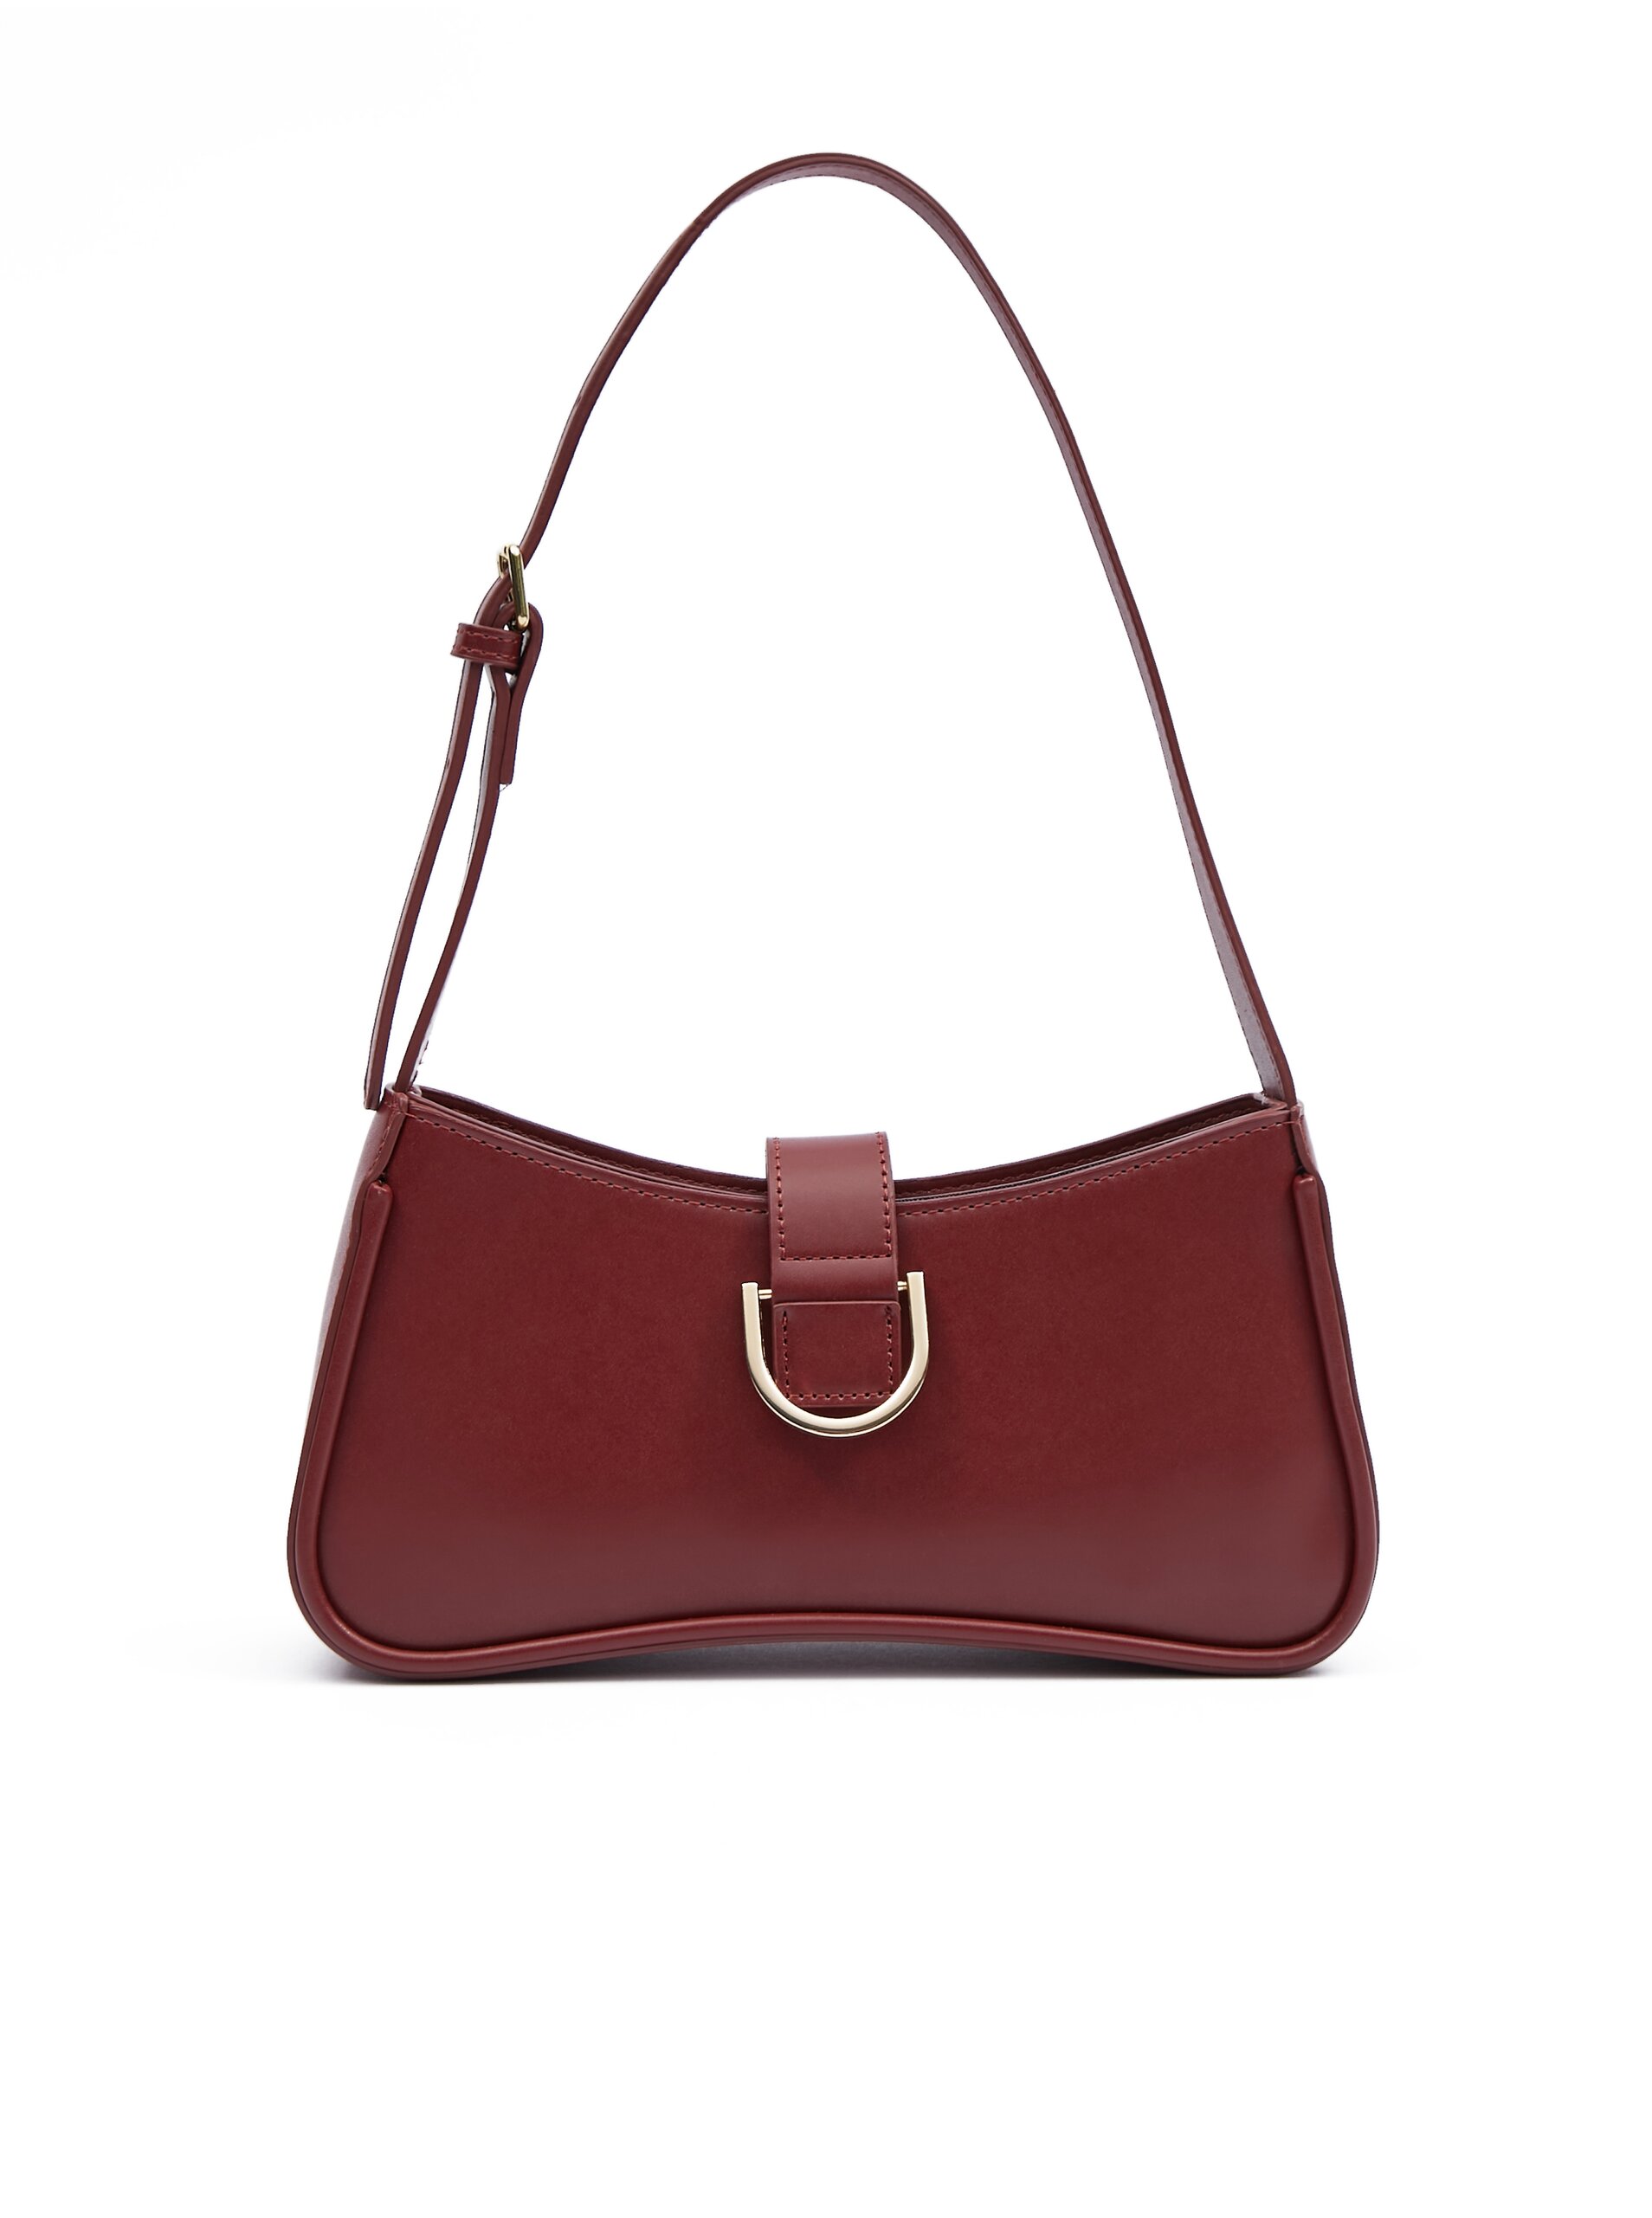 Orsay Burgundy women's handbag - Women's